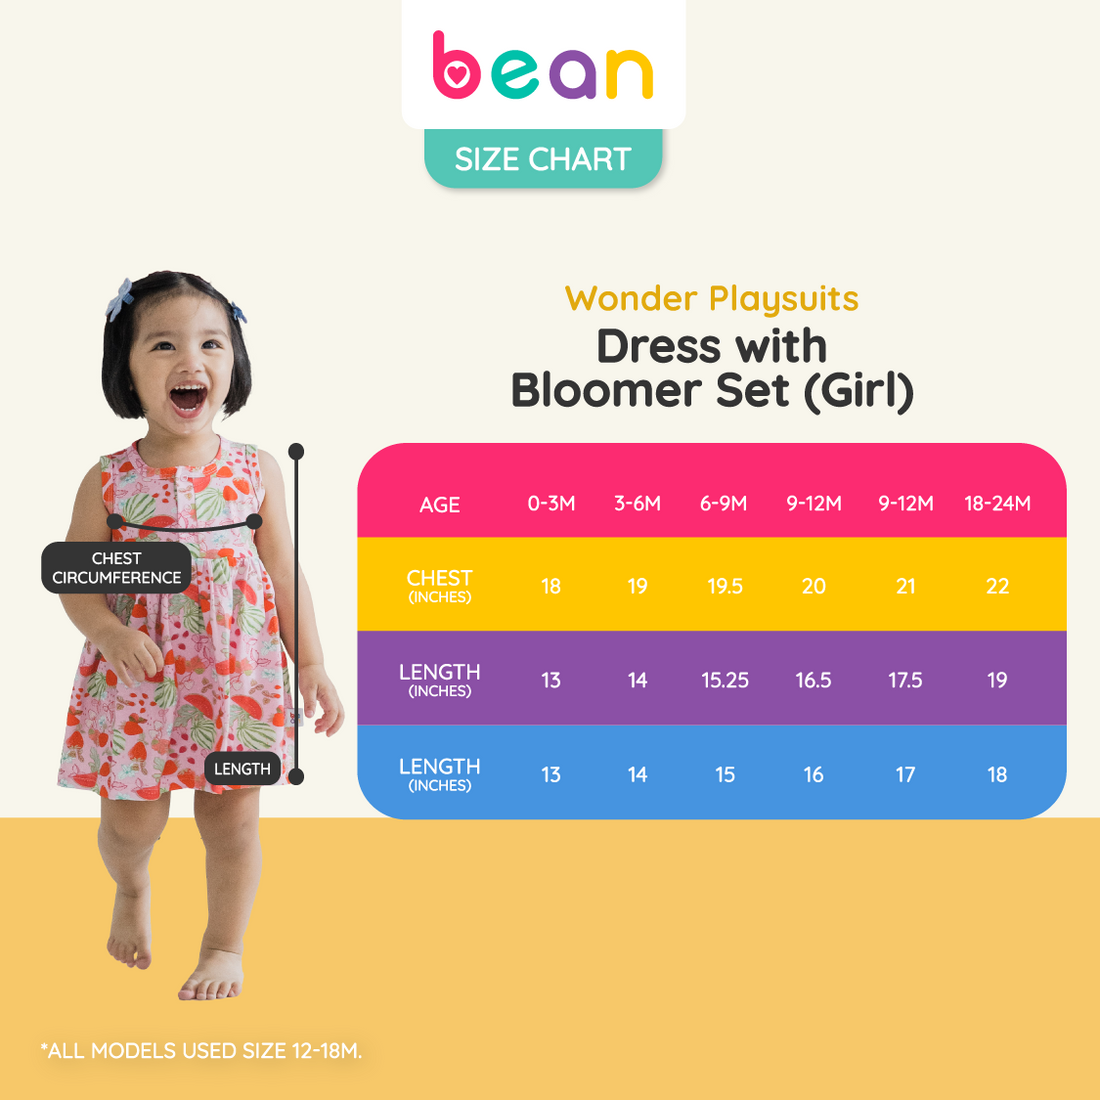 Wonder Playsuits Alessa Lanot Pakwan Fun Dress with Bloomer Set